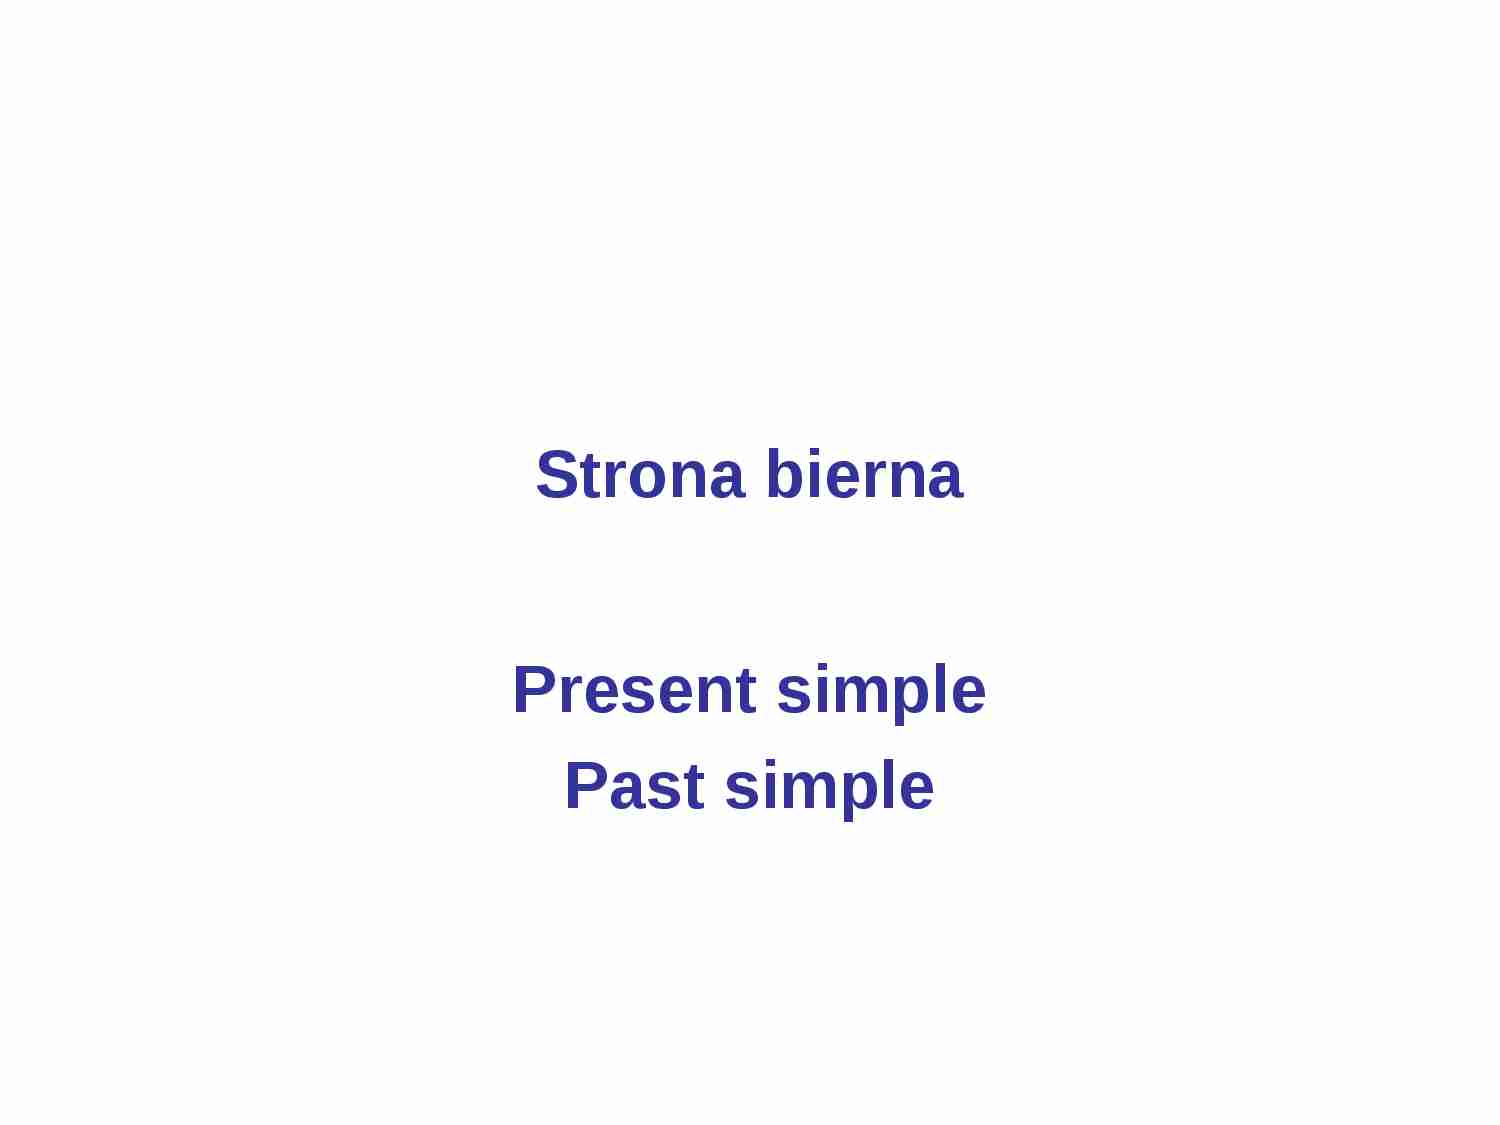 Strona bierna - Present Simple, Past Simple cz___ 1 - strona 1